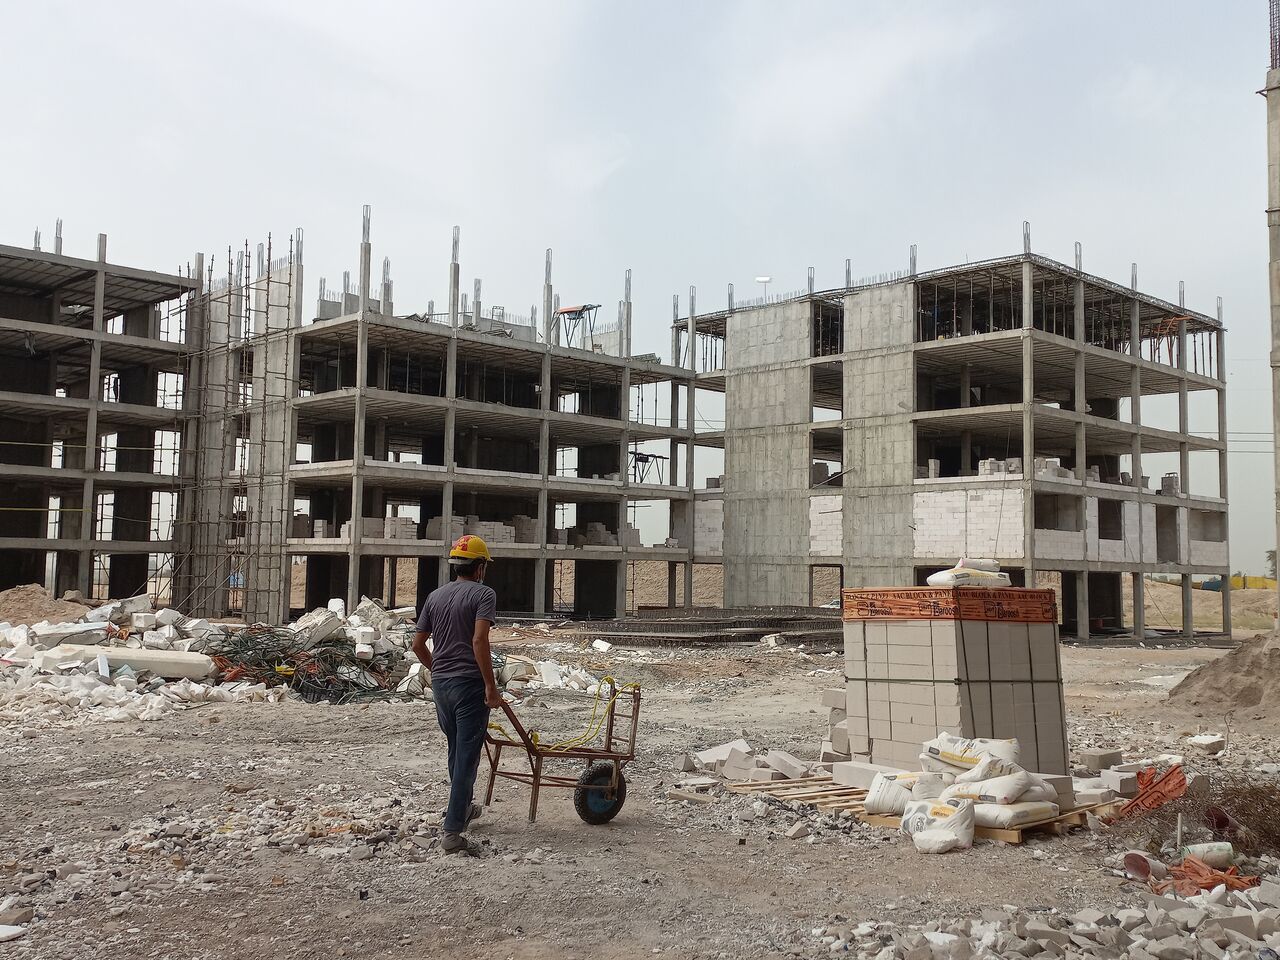 ۲هزار و ۶۰۰ واحد مسکن ملی در خوزستان در حال ساخت است